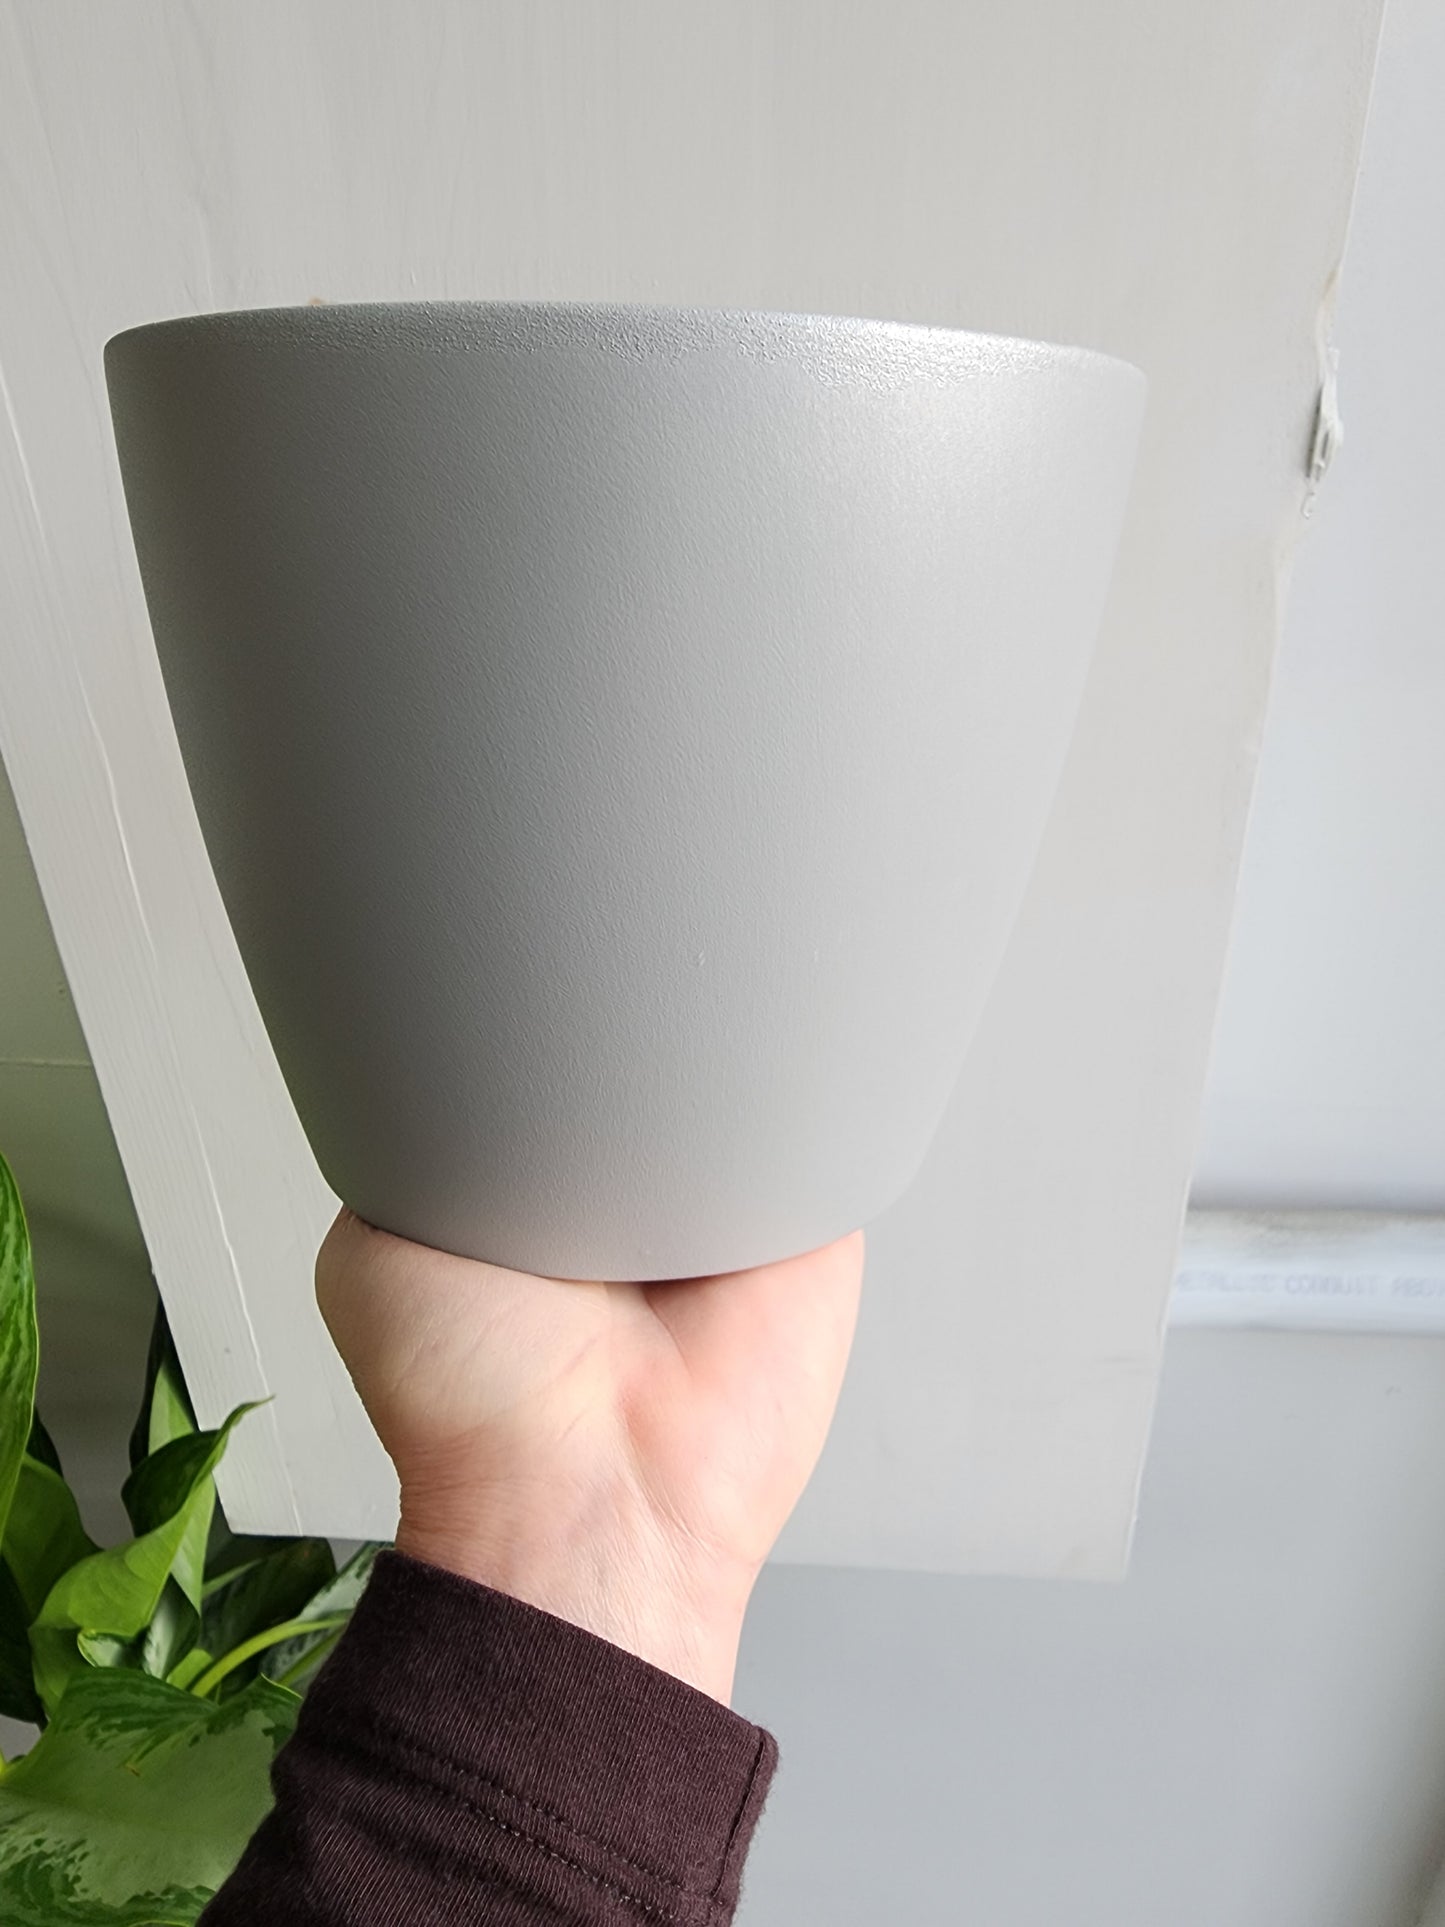 Nubia Light Gray Ceramic Pot Cover - 17cm/6.75in.